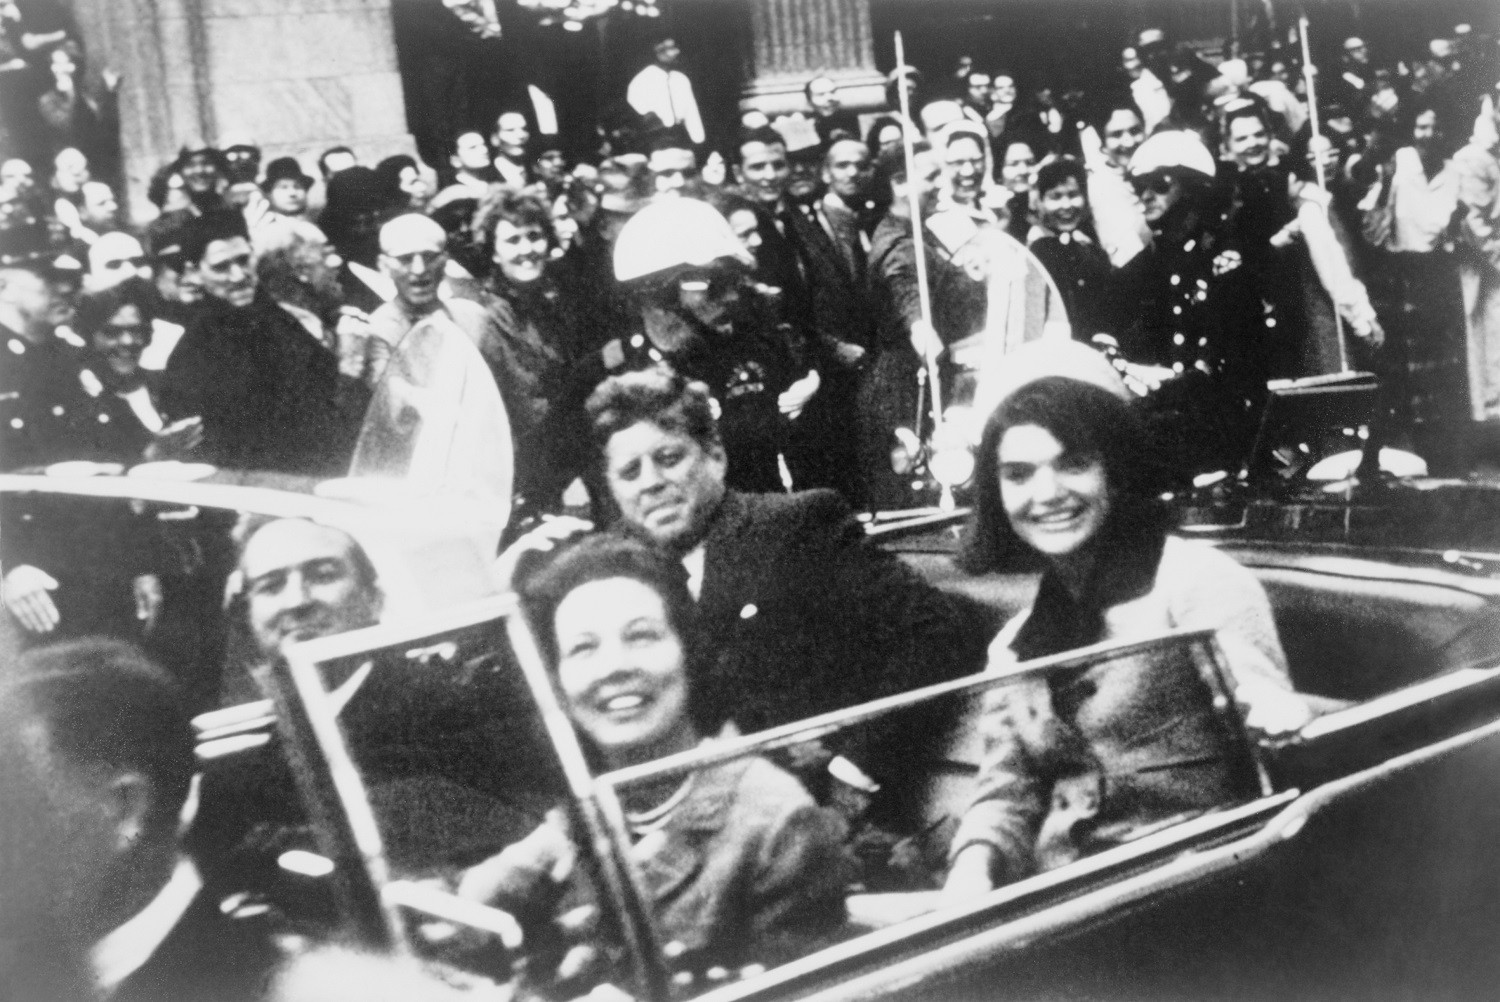 Od zamachu na Kennedy’ego minęło niemal 60 lat. CIA ujawnia prawie 13 000 dokumentów w tej sprawie 